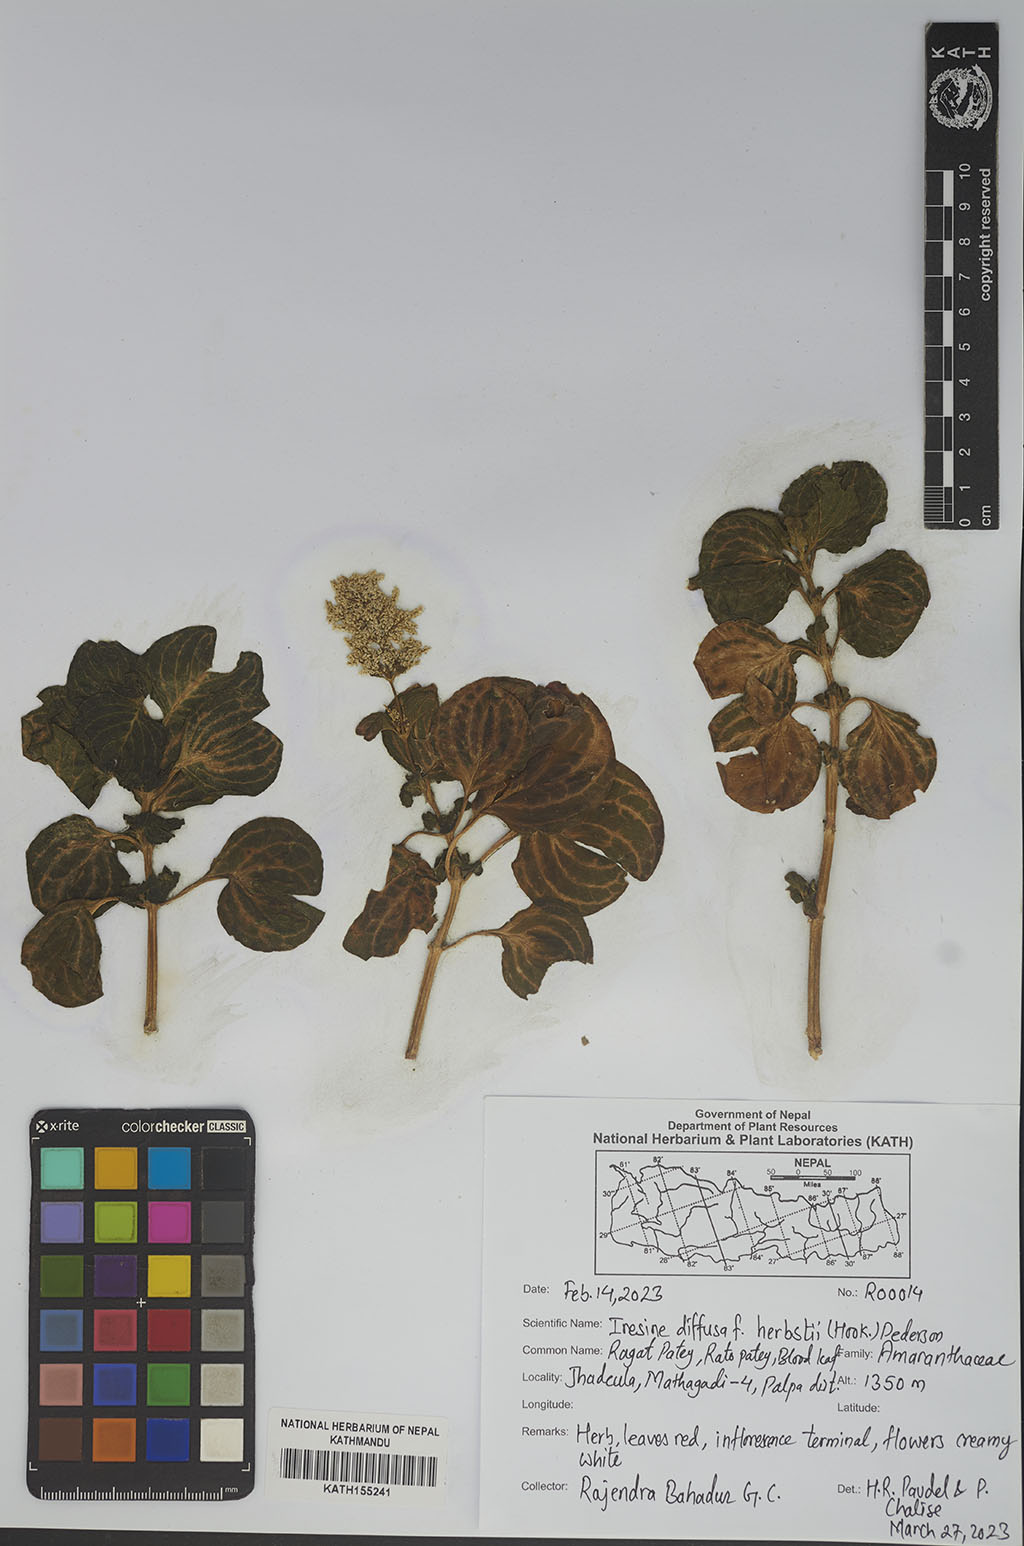 Iresine diffusa f. herbstii (Hook.) Pedersen